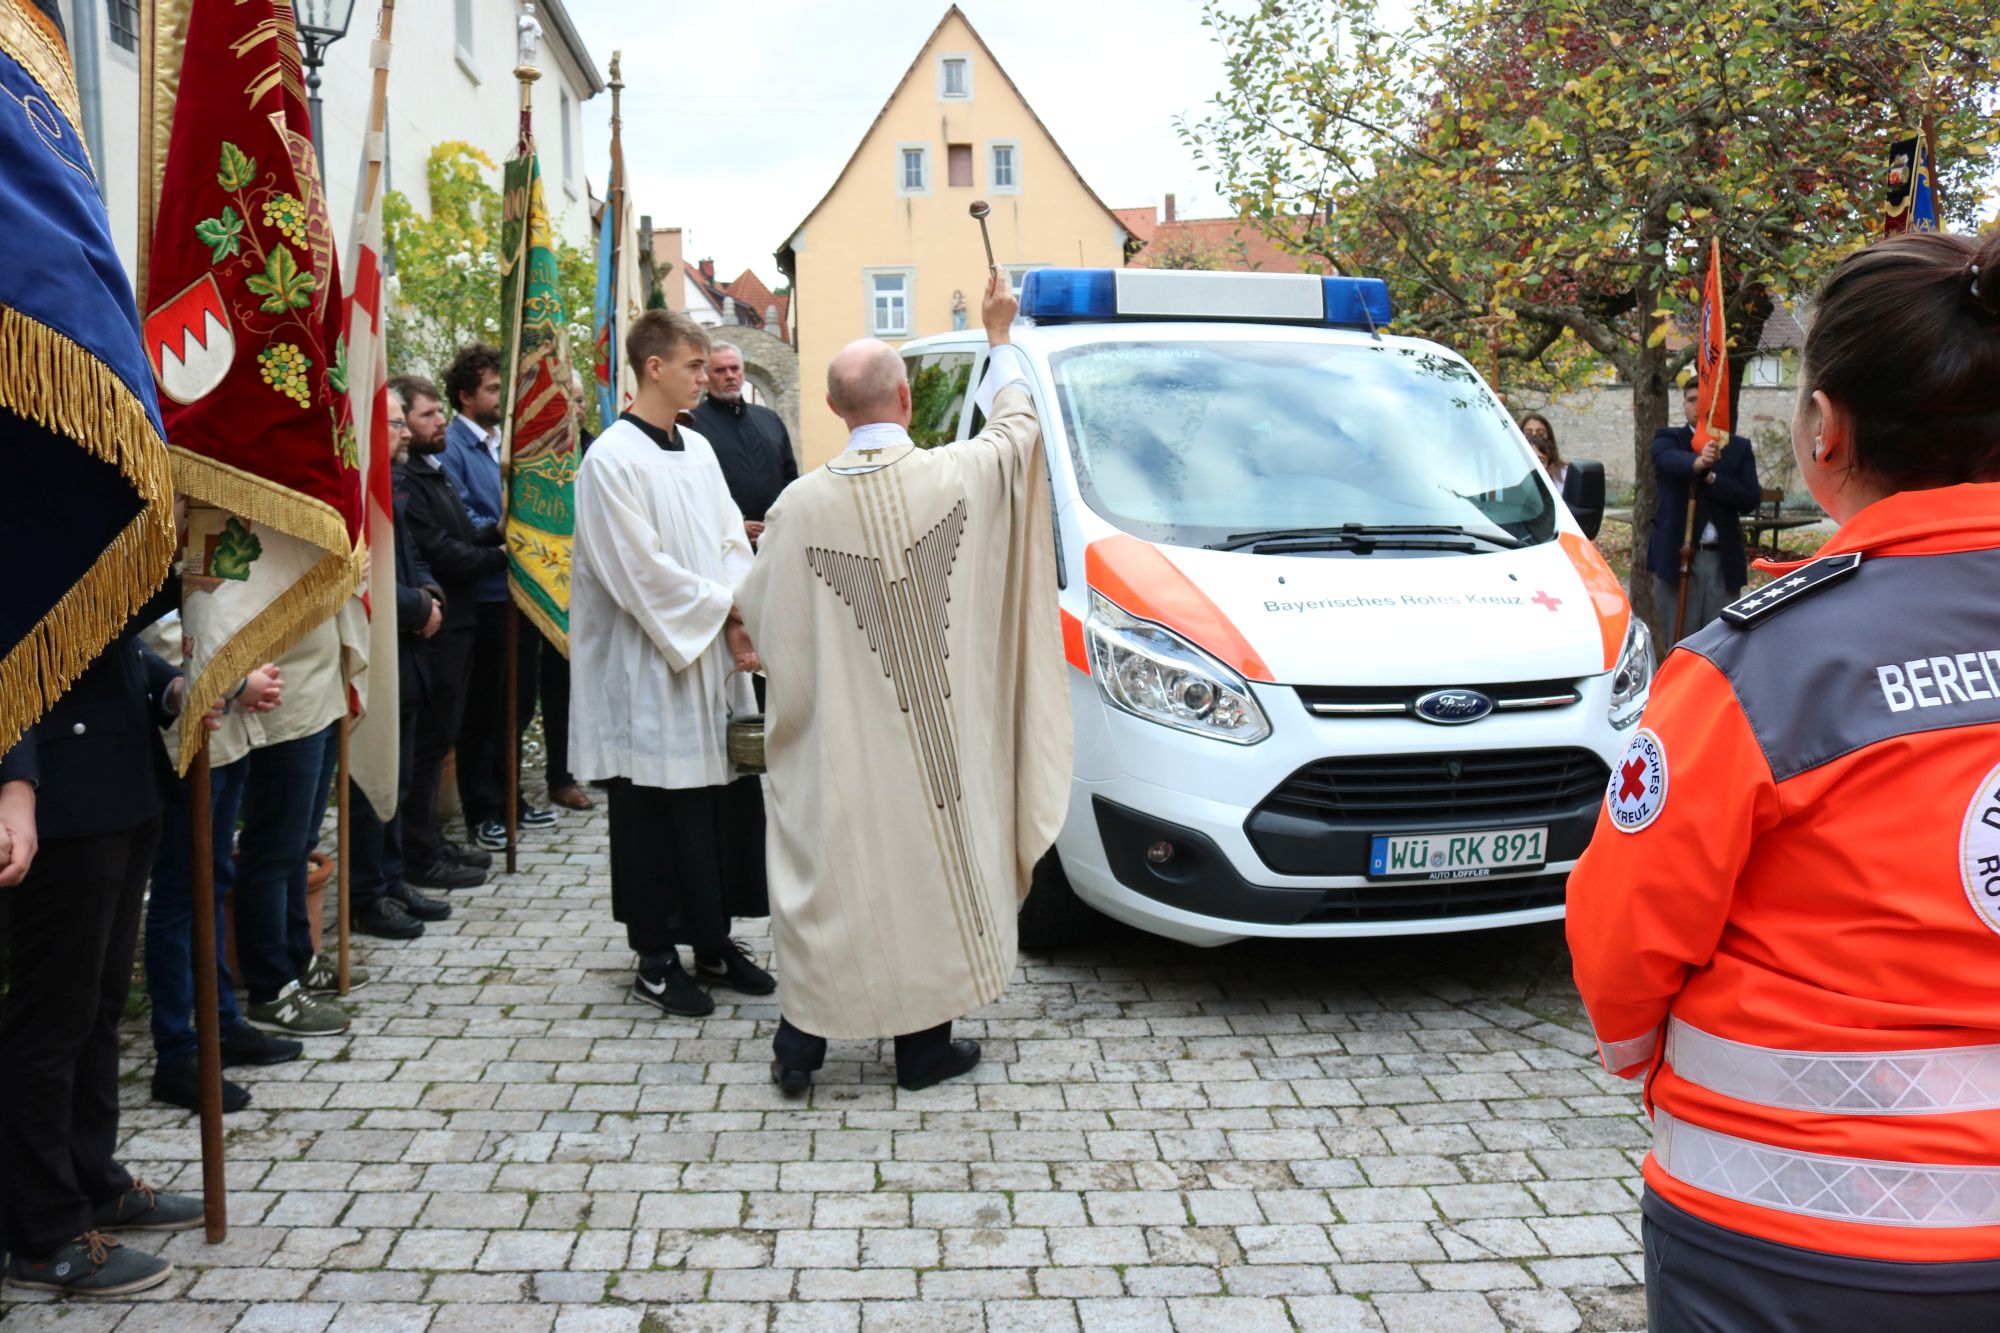 Fahrzeugsegnung durch Pfarrer Paul Weismantel an der Kirche St. Stephanus in Randersacker